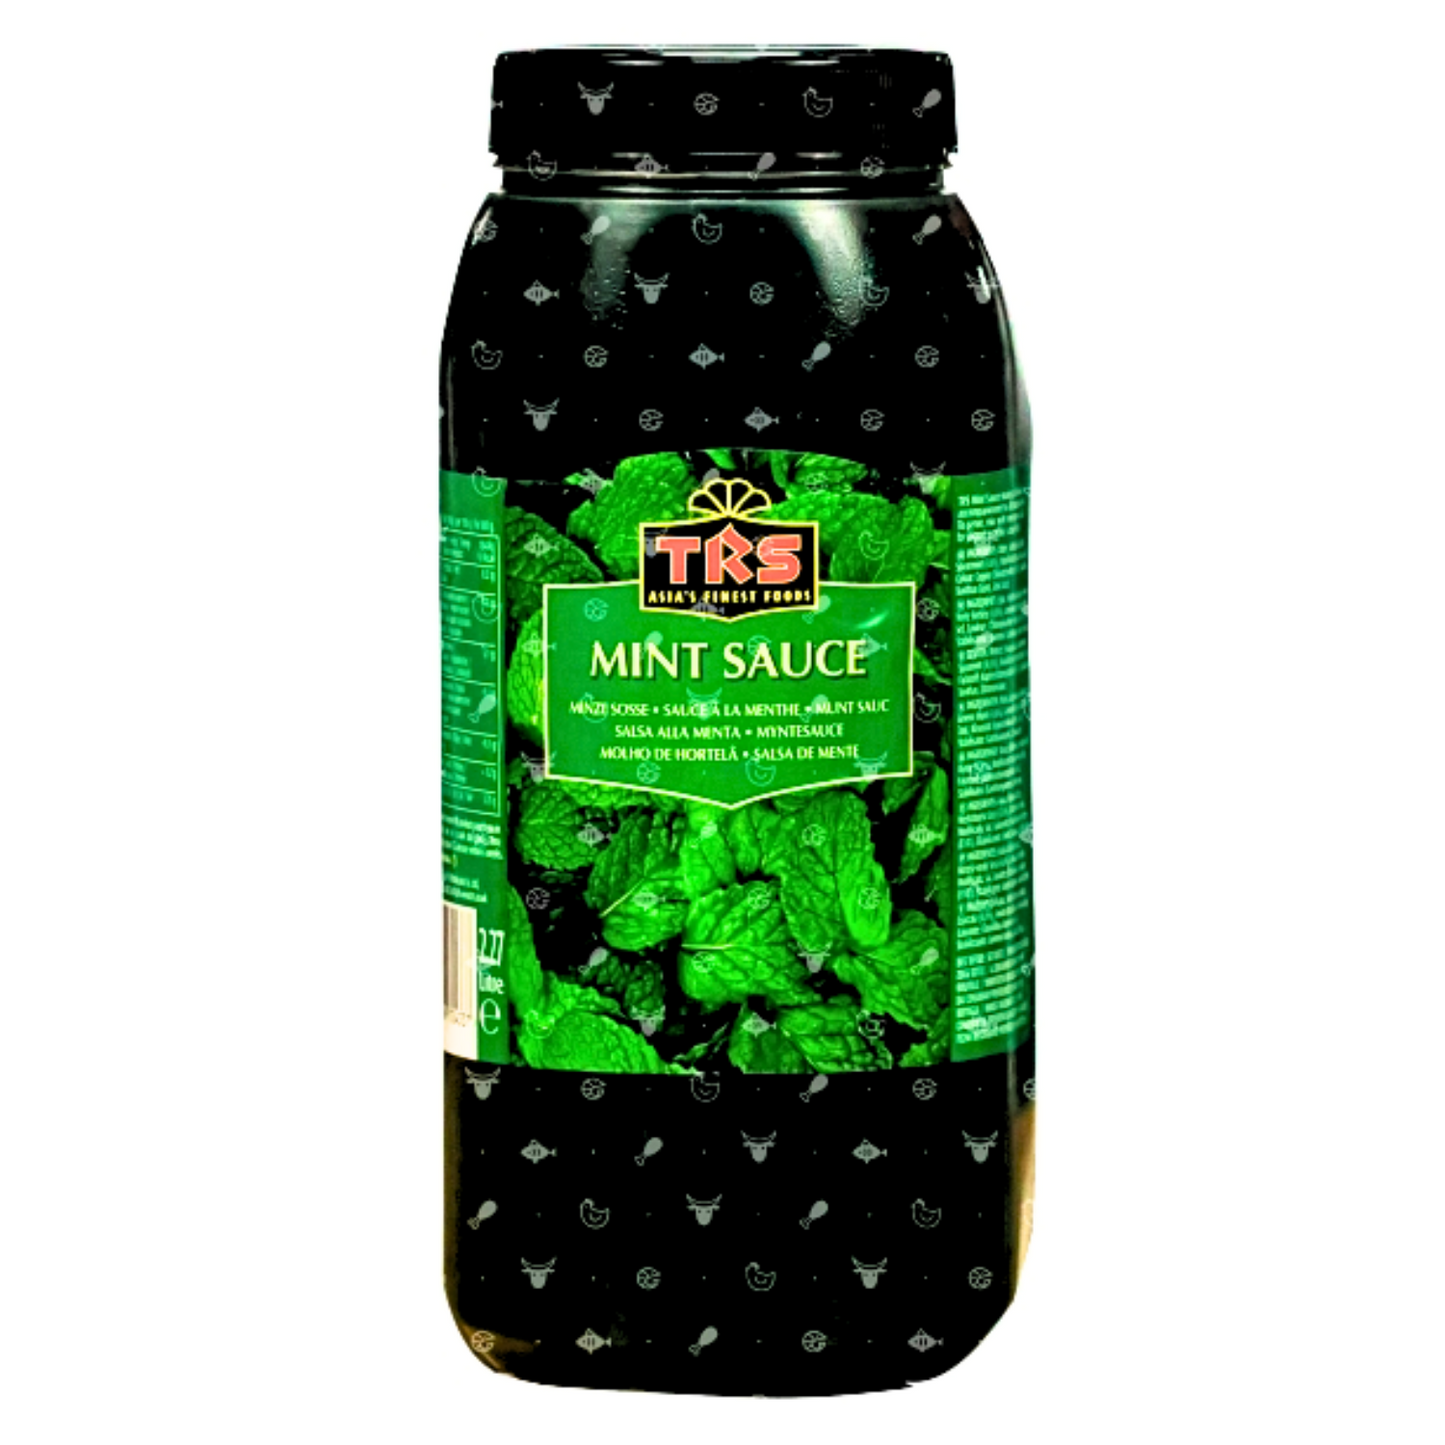 Mint Sauce (2 x 2.27L)